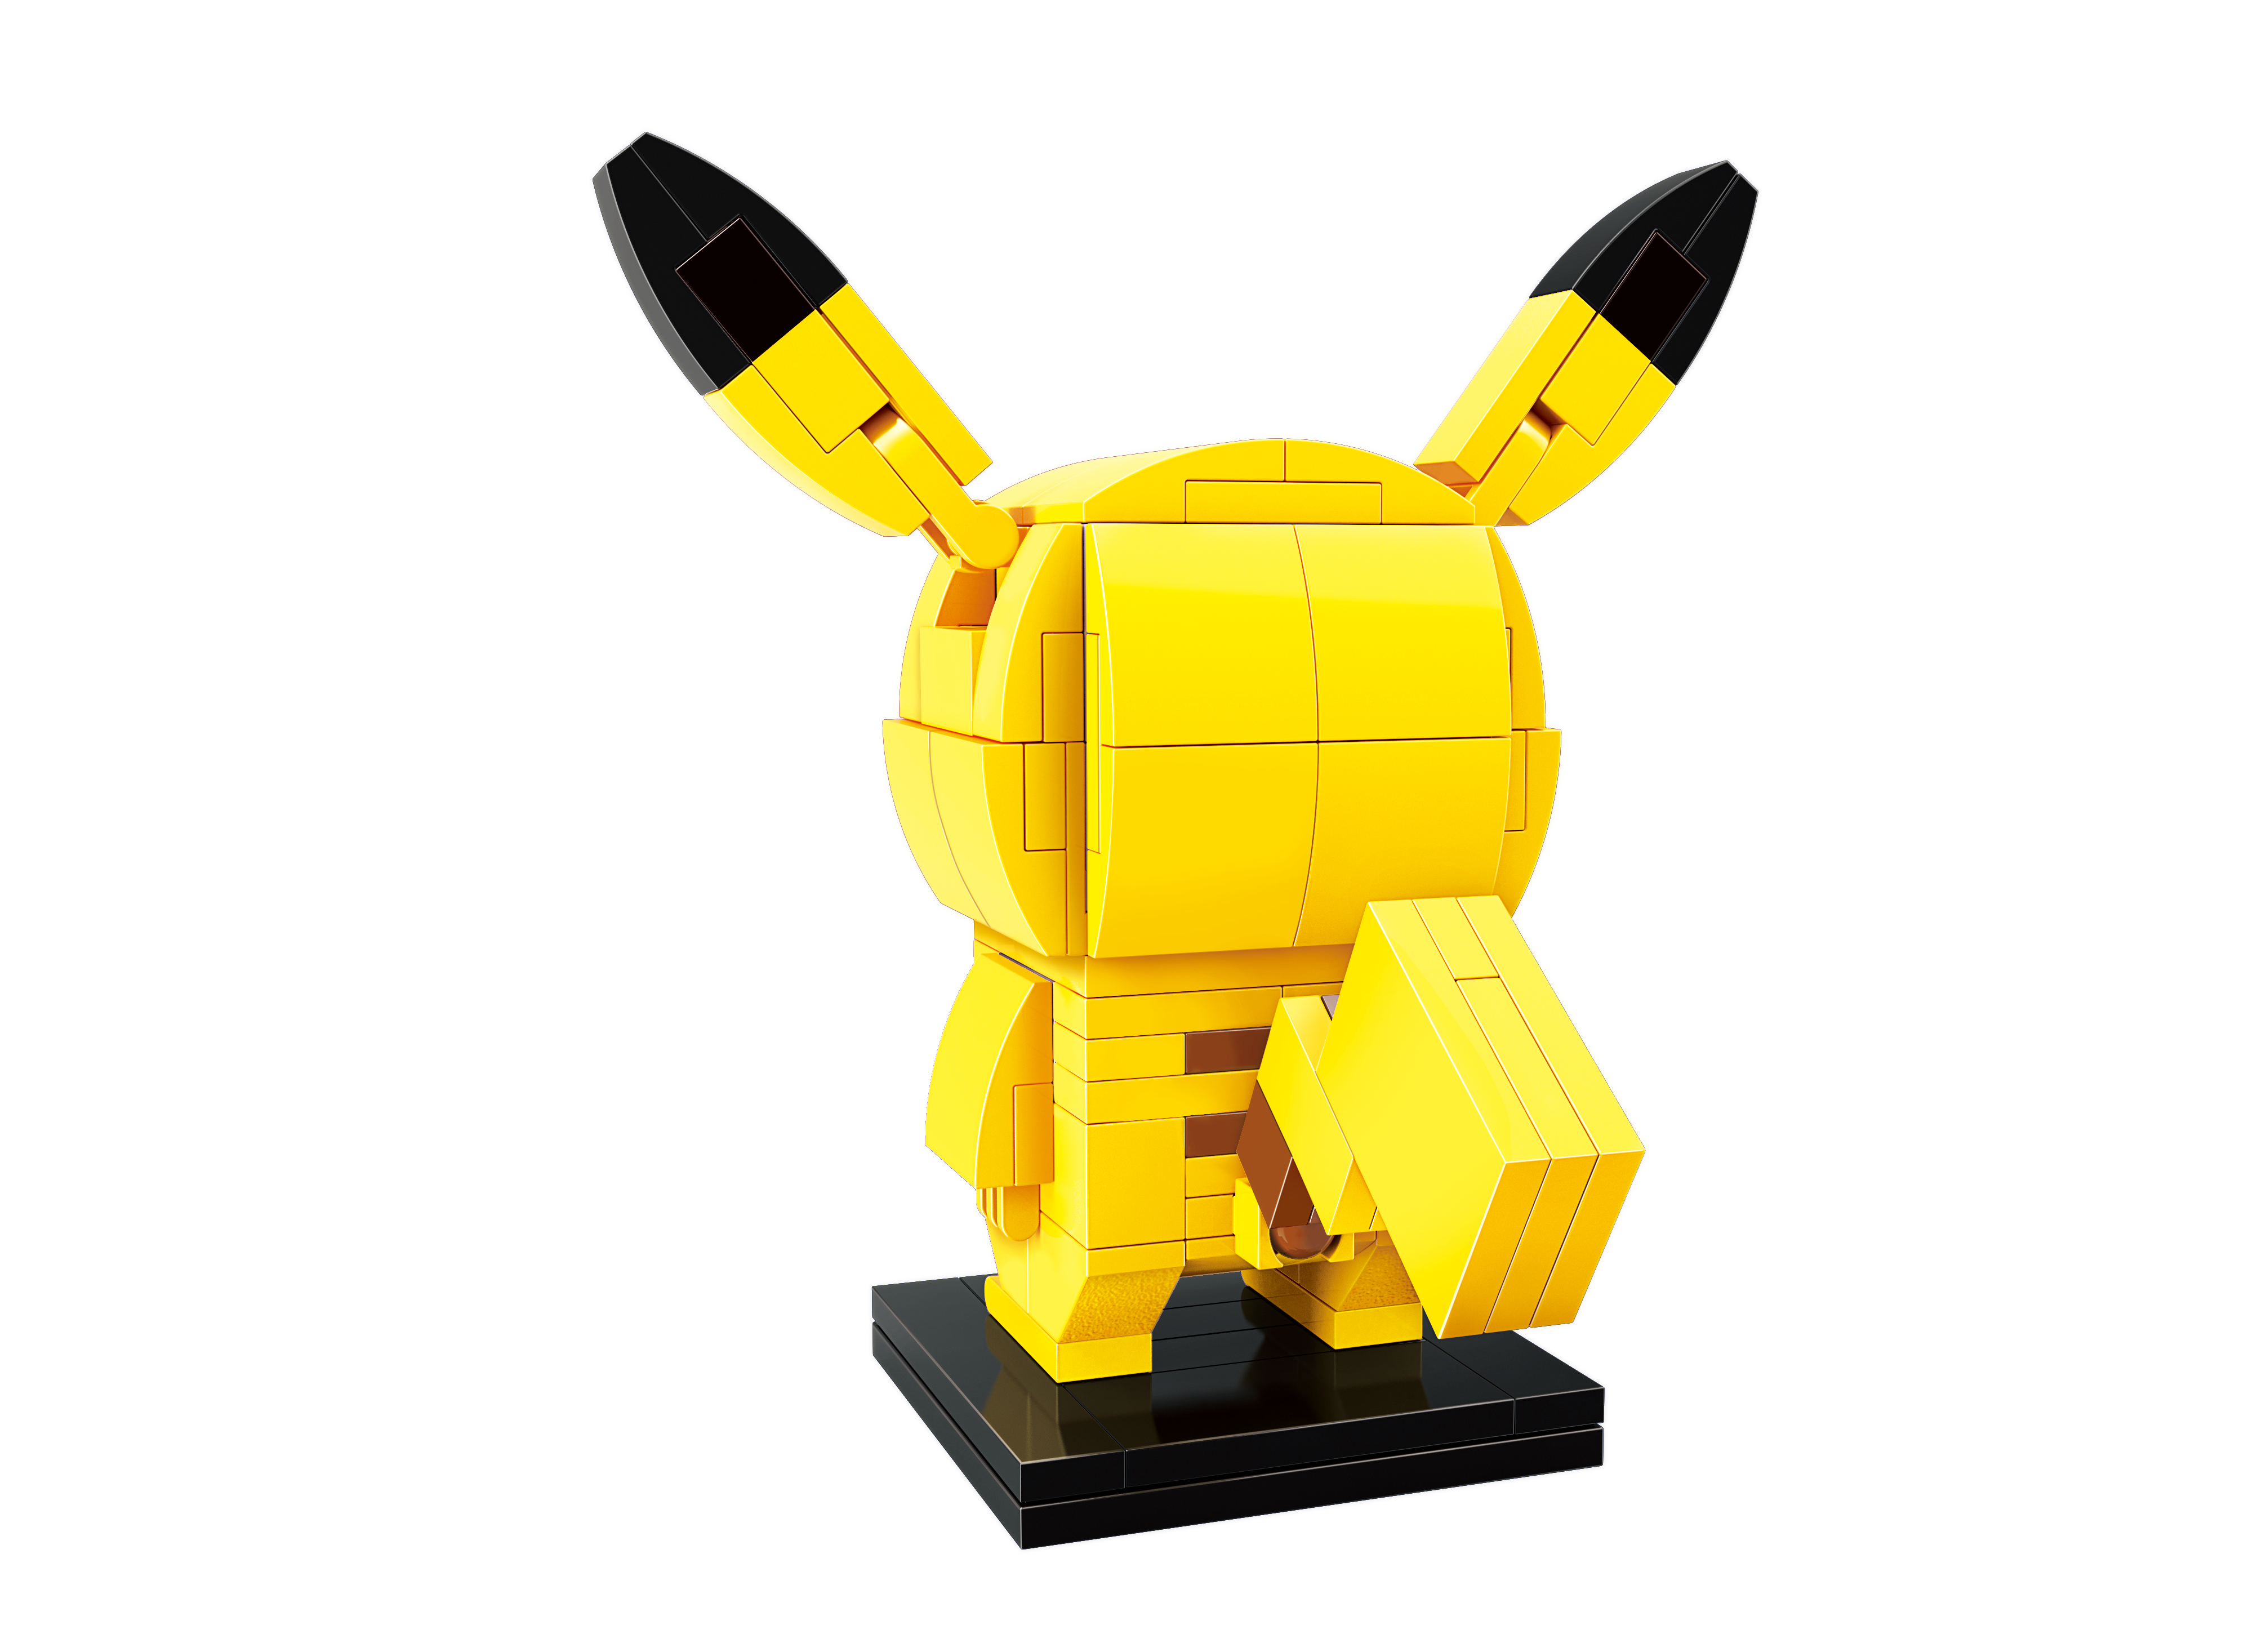 Đồ chơi xếp hình thông minh Pokemon Pikachu  Keeppley  qman A0101